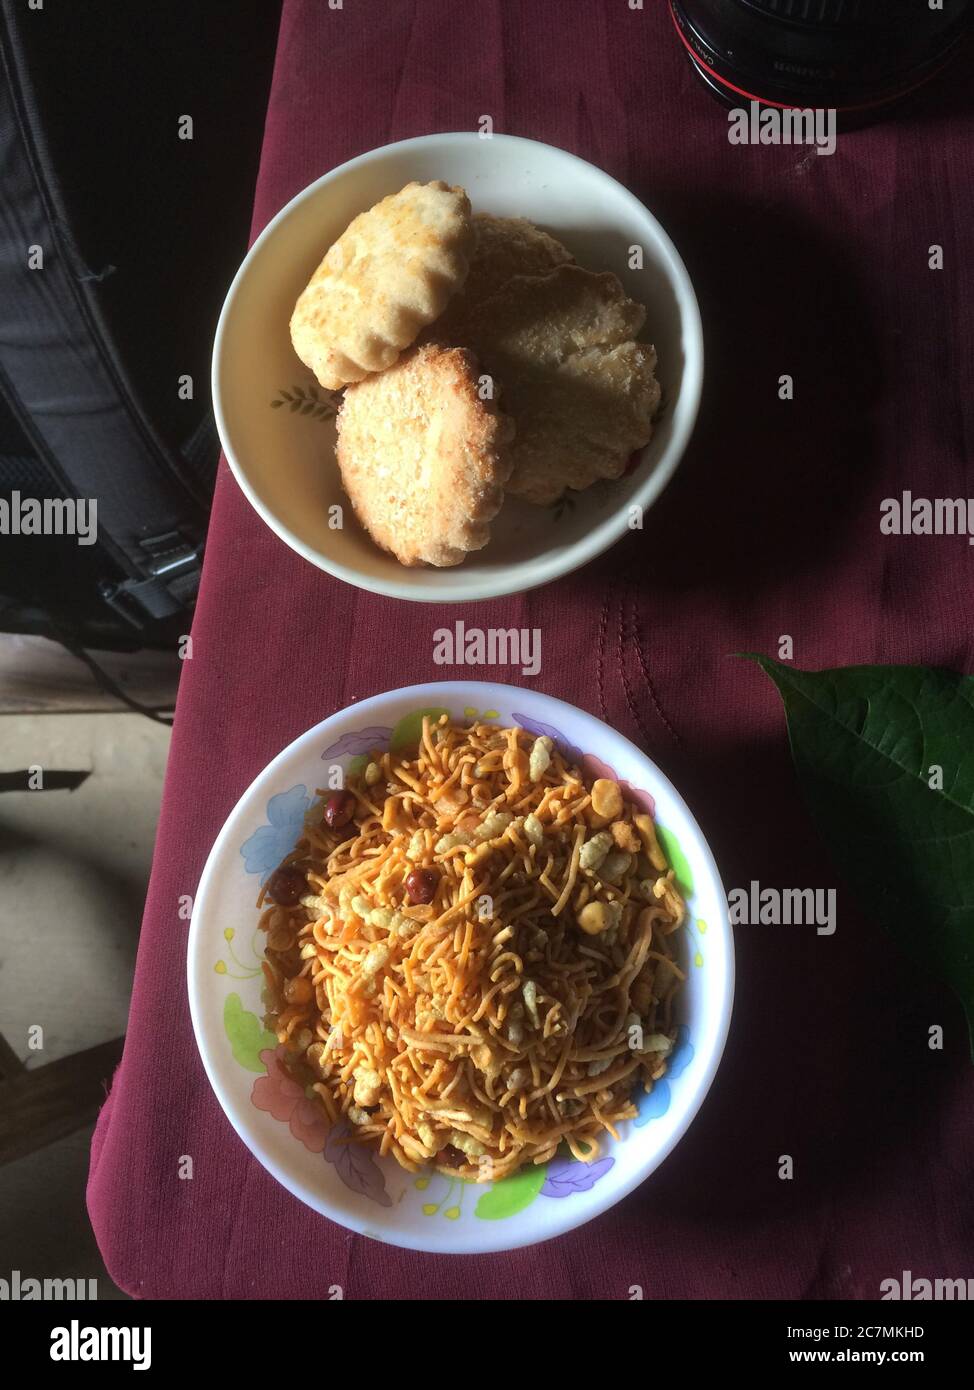 Snacks für die Passanten werden auf einem Tisch in Manikganj, einer kleinen Stadt außerhalb von Dhaka, Bangladesch, serviert, bestehend aus lokal hergestellten Keksen und ‘Chanachur’ (eine gewürzte Mischung aus Reis und Gramm Mehl, gemischt mit Erdnüssen). Stockfoto